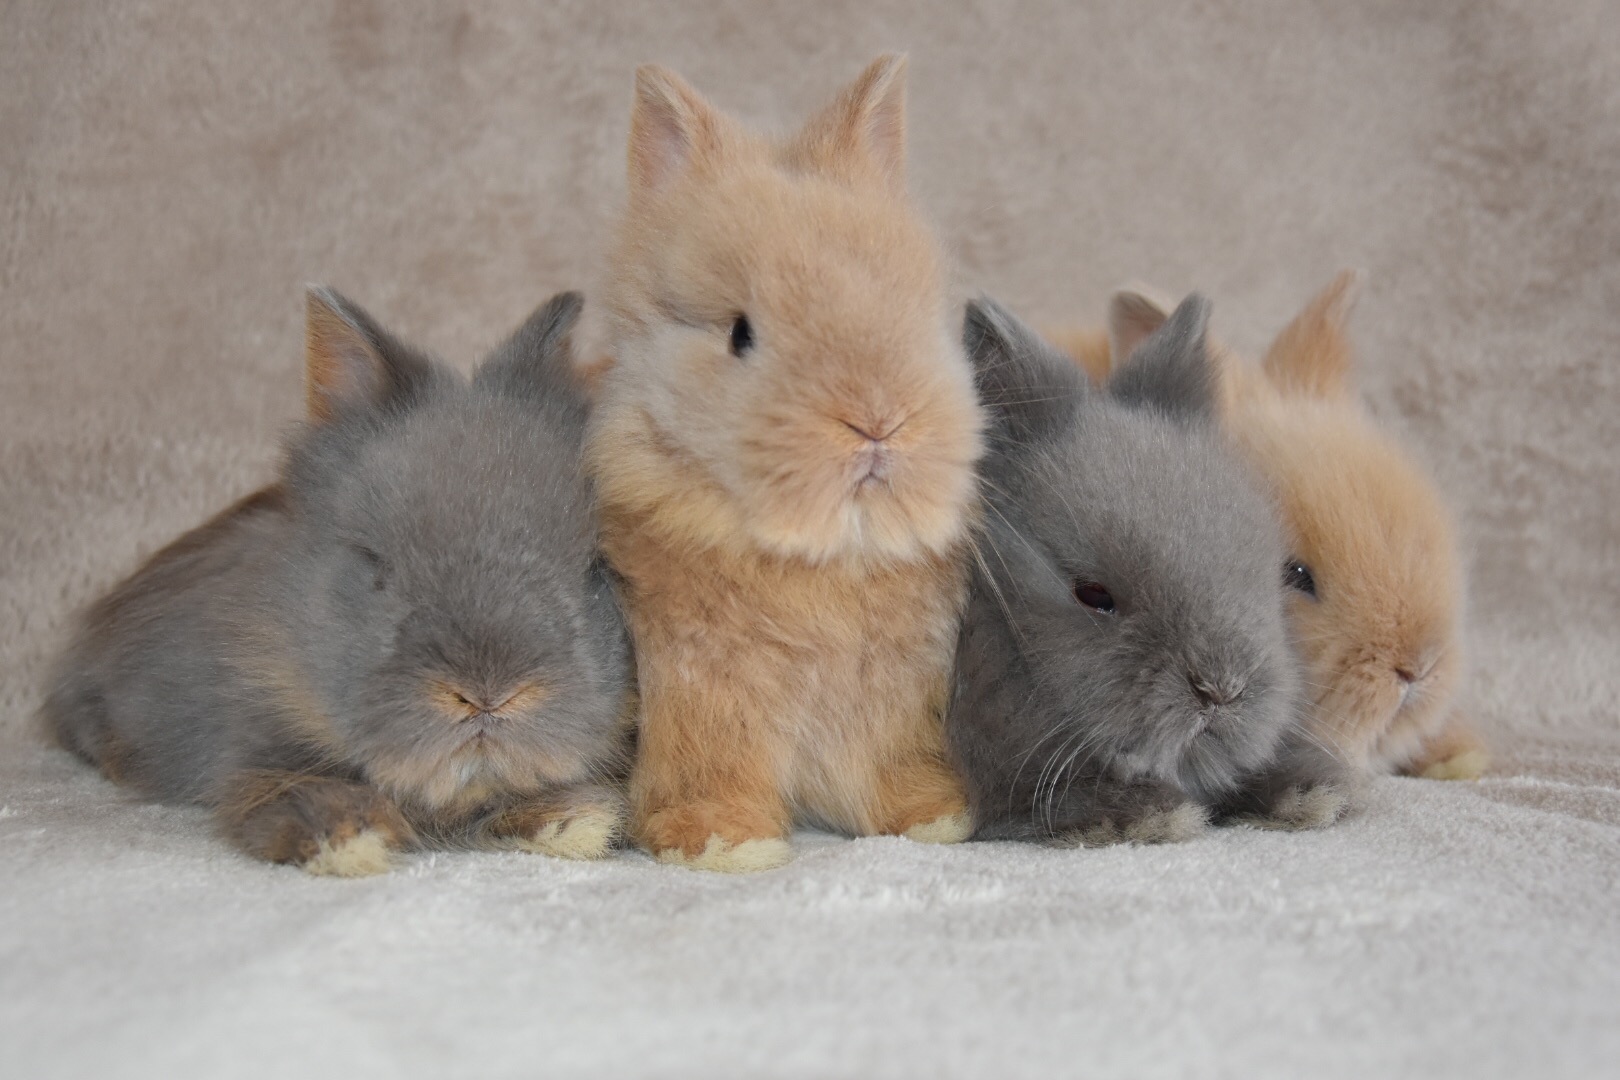 Algebra Flitsend alleen Hobby konijnen fokkerij van teddy dwerg konijnen in Oudewater. Wij zijn  hobbyfokkers van het langharige ras teddy dwerg konijnen.Konijnenstal  TeddyLove | Hobby fokker van Teddy Dwerg konijnen